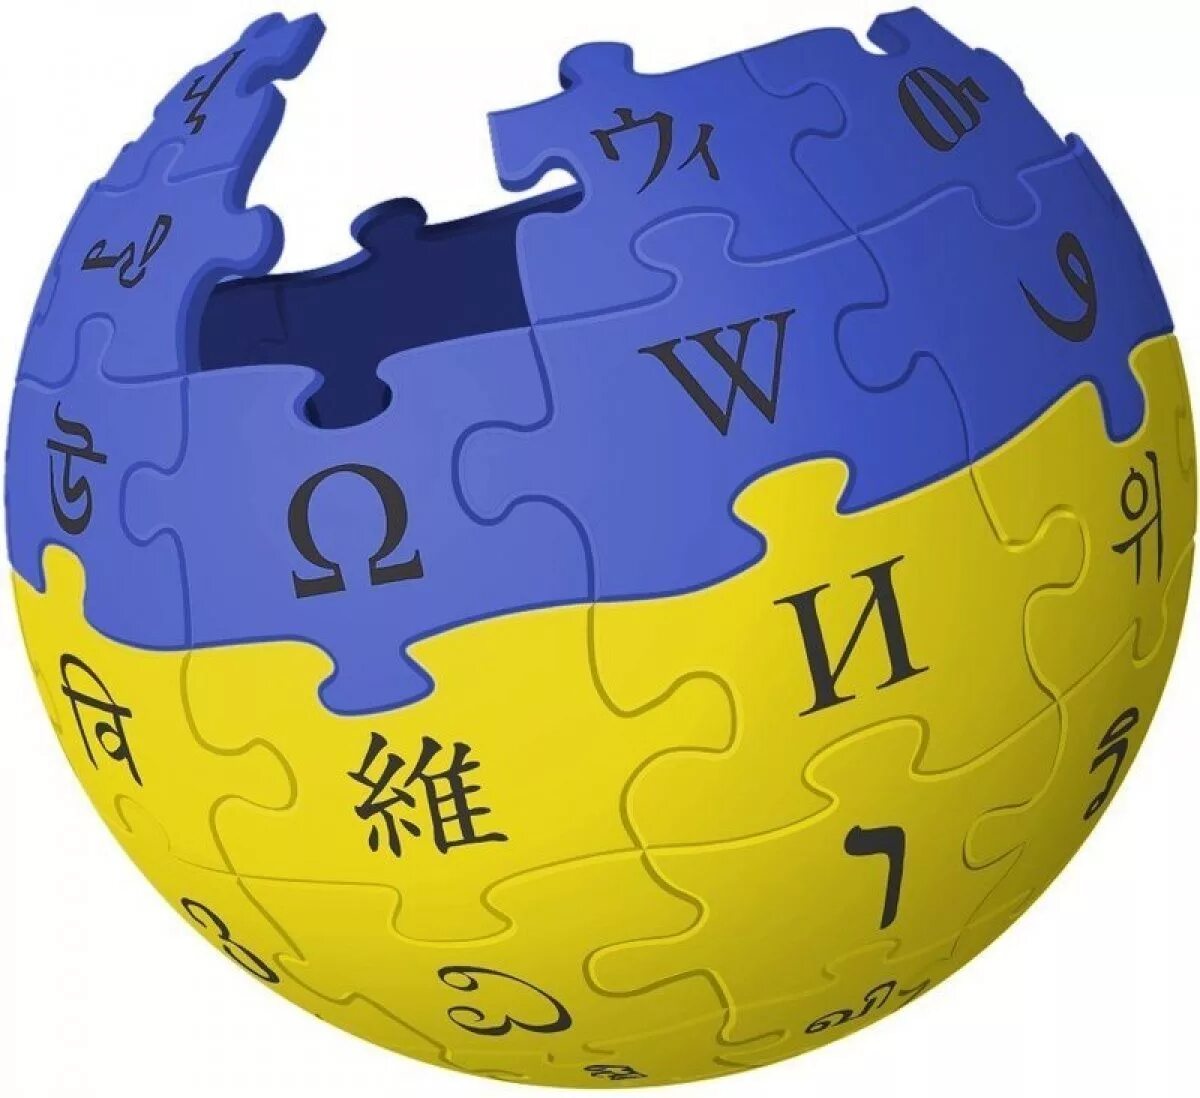 Украинская википедия. Википедия логотип. Википедия. Значок Википедии. Википедия картинки.